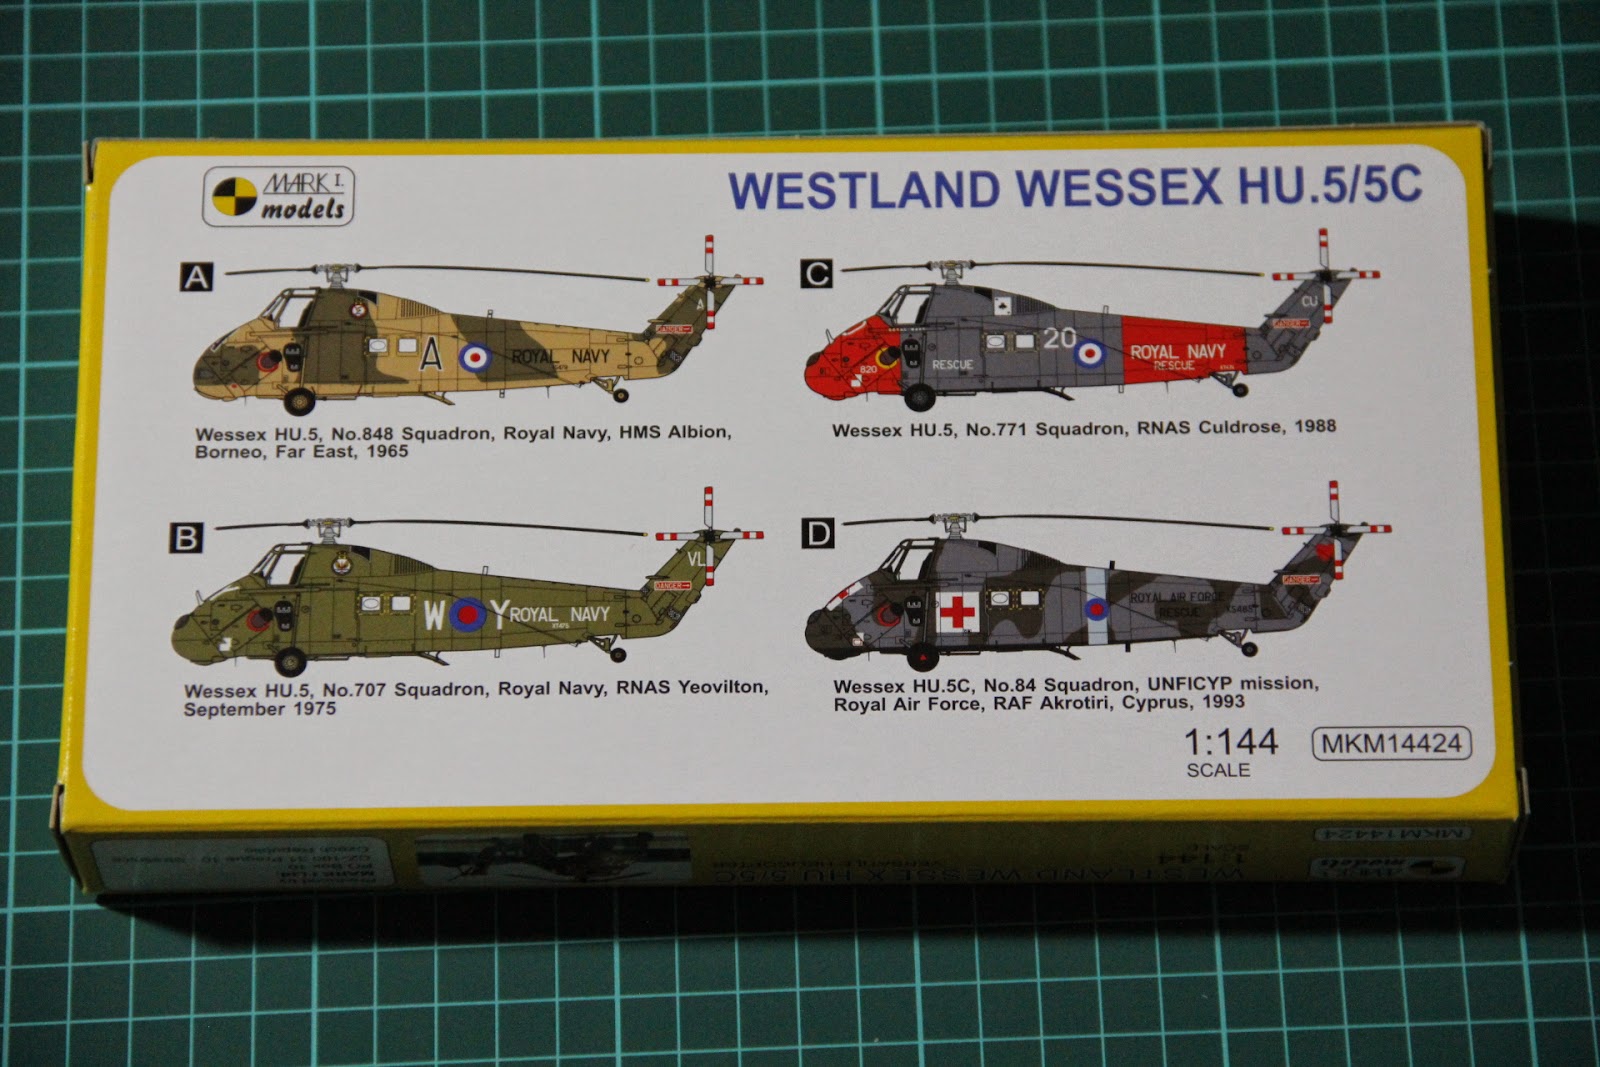 Mark I Models 1/144 Westland Wessex HU.5/5C (MKM14424) - DetailScaleView